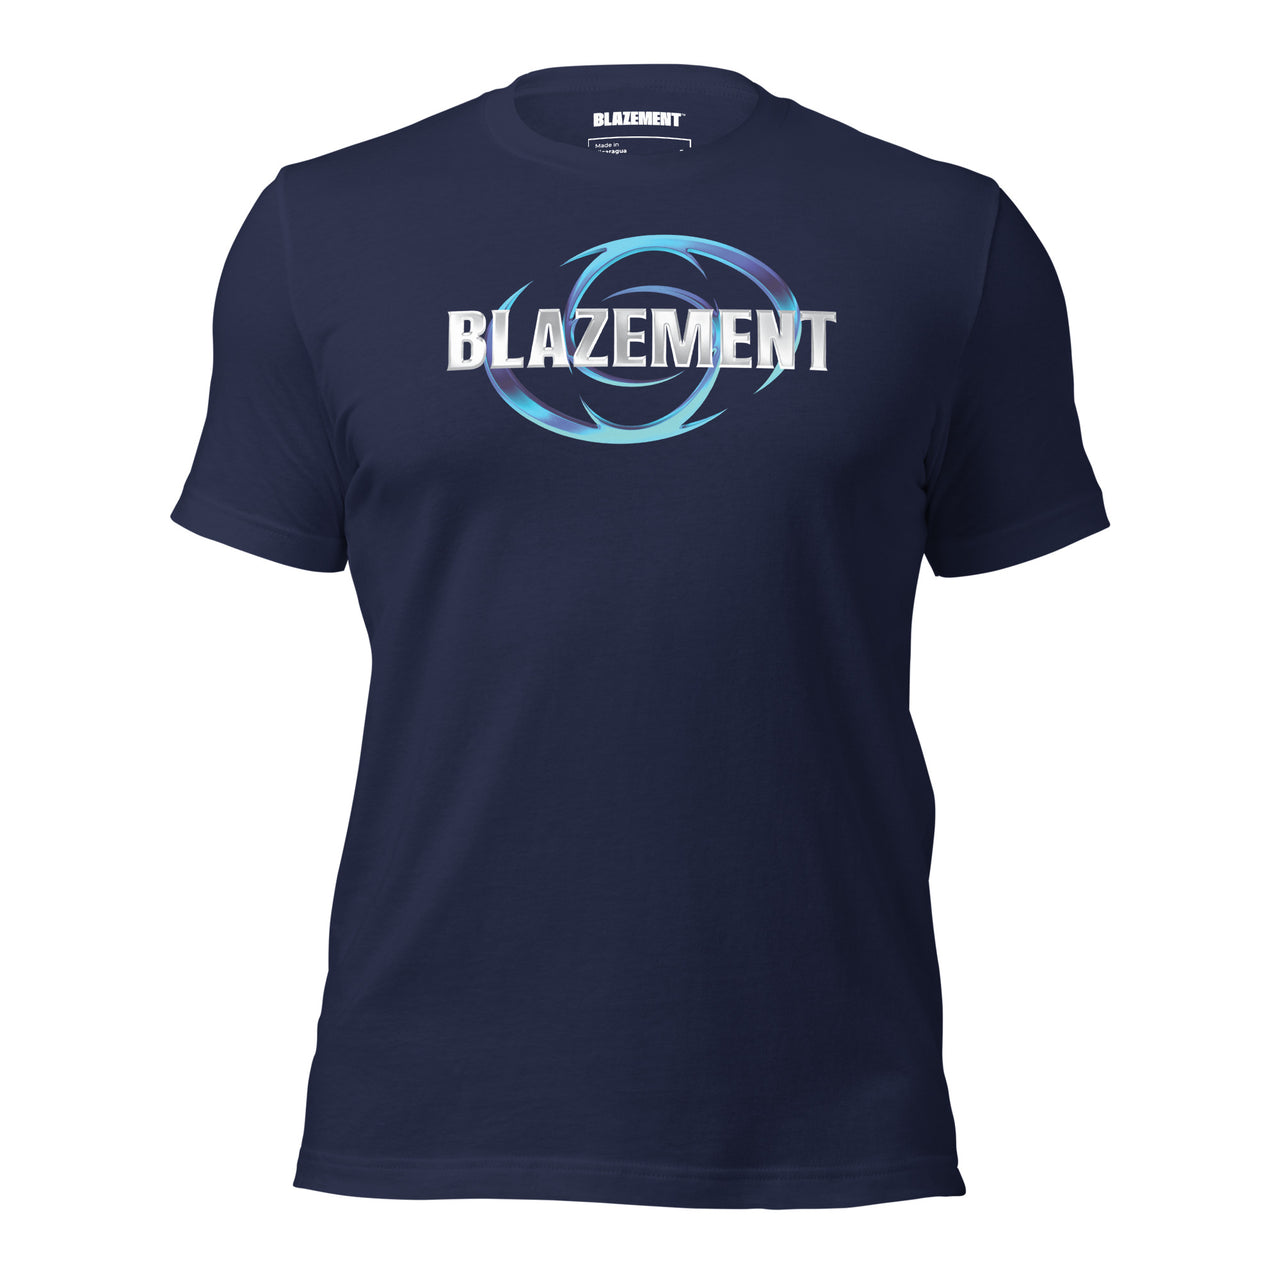 BLAZEMENT BLAZE IS BLUE NAVY T-SHIRT